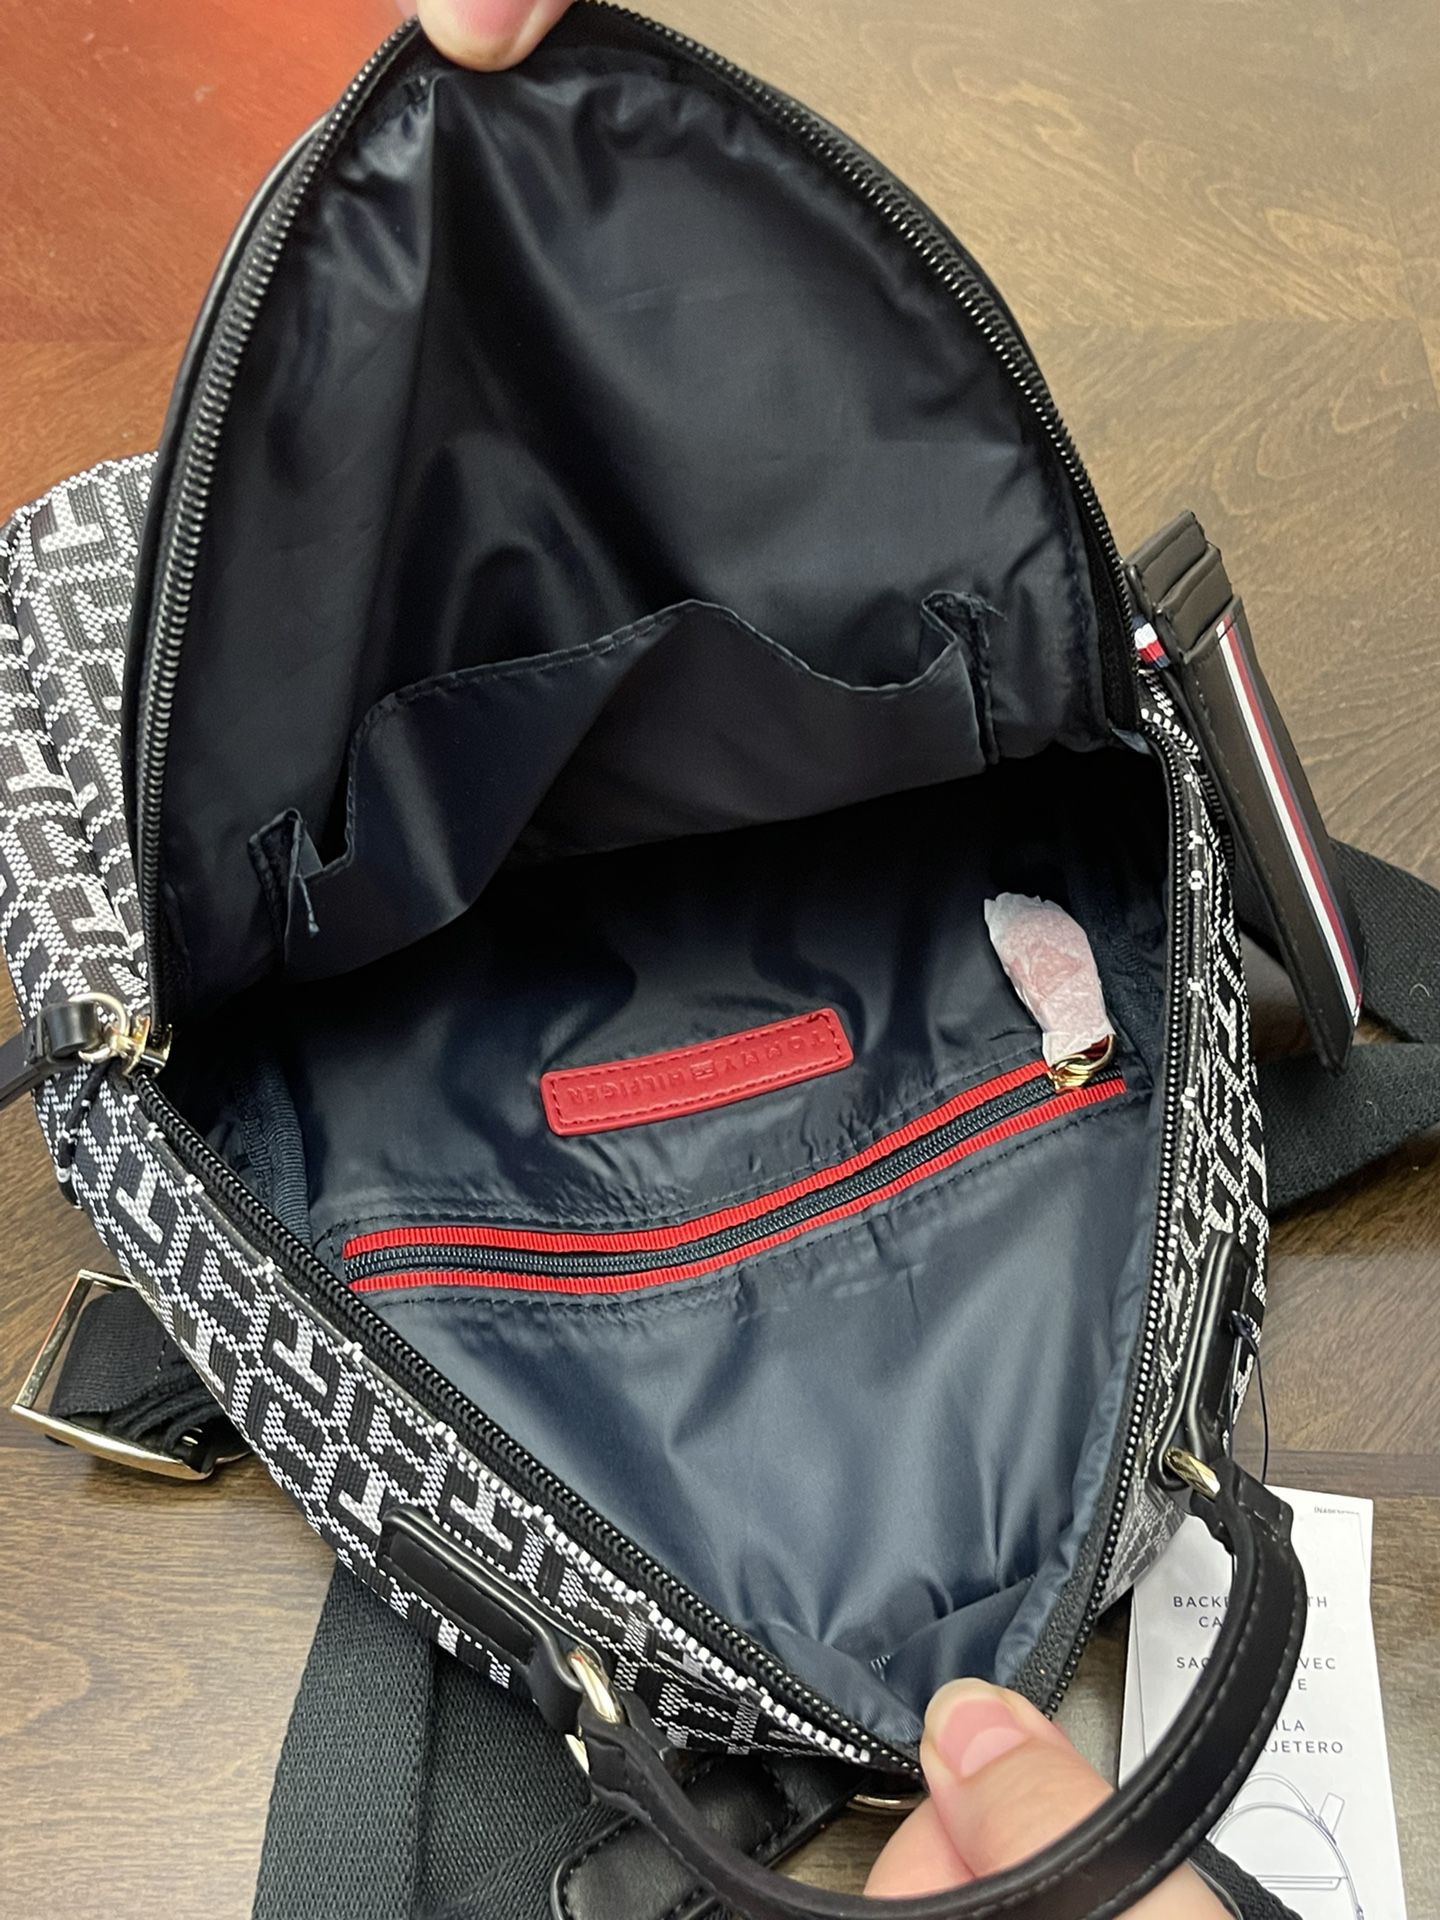 Tommy Hilfiger backpack 